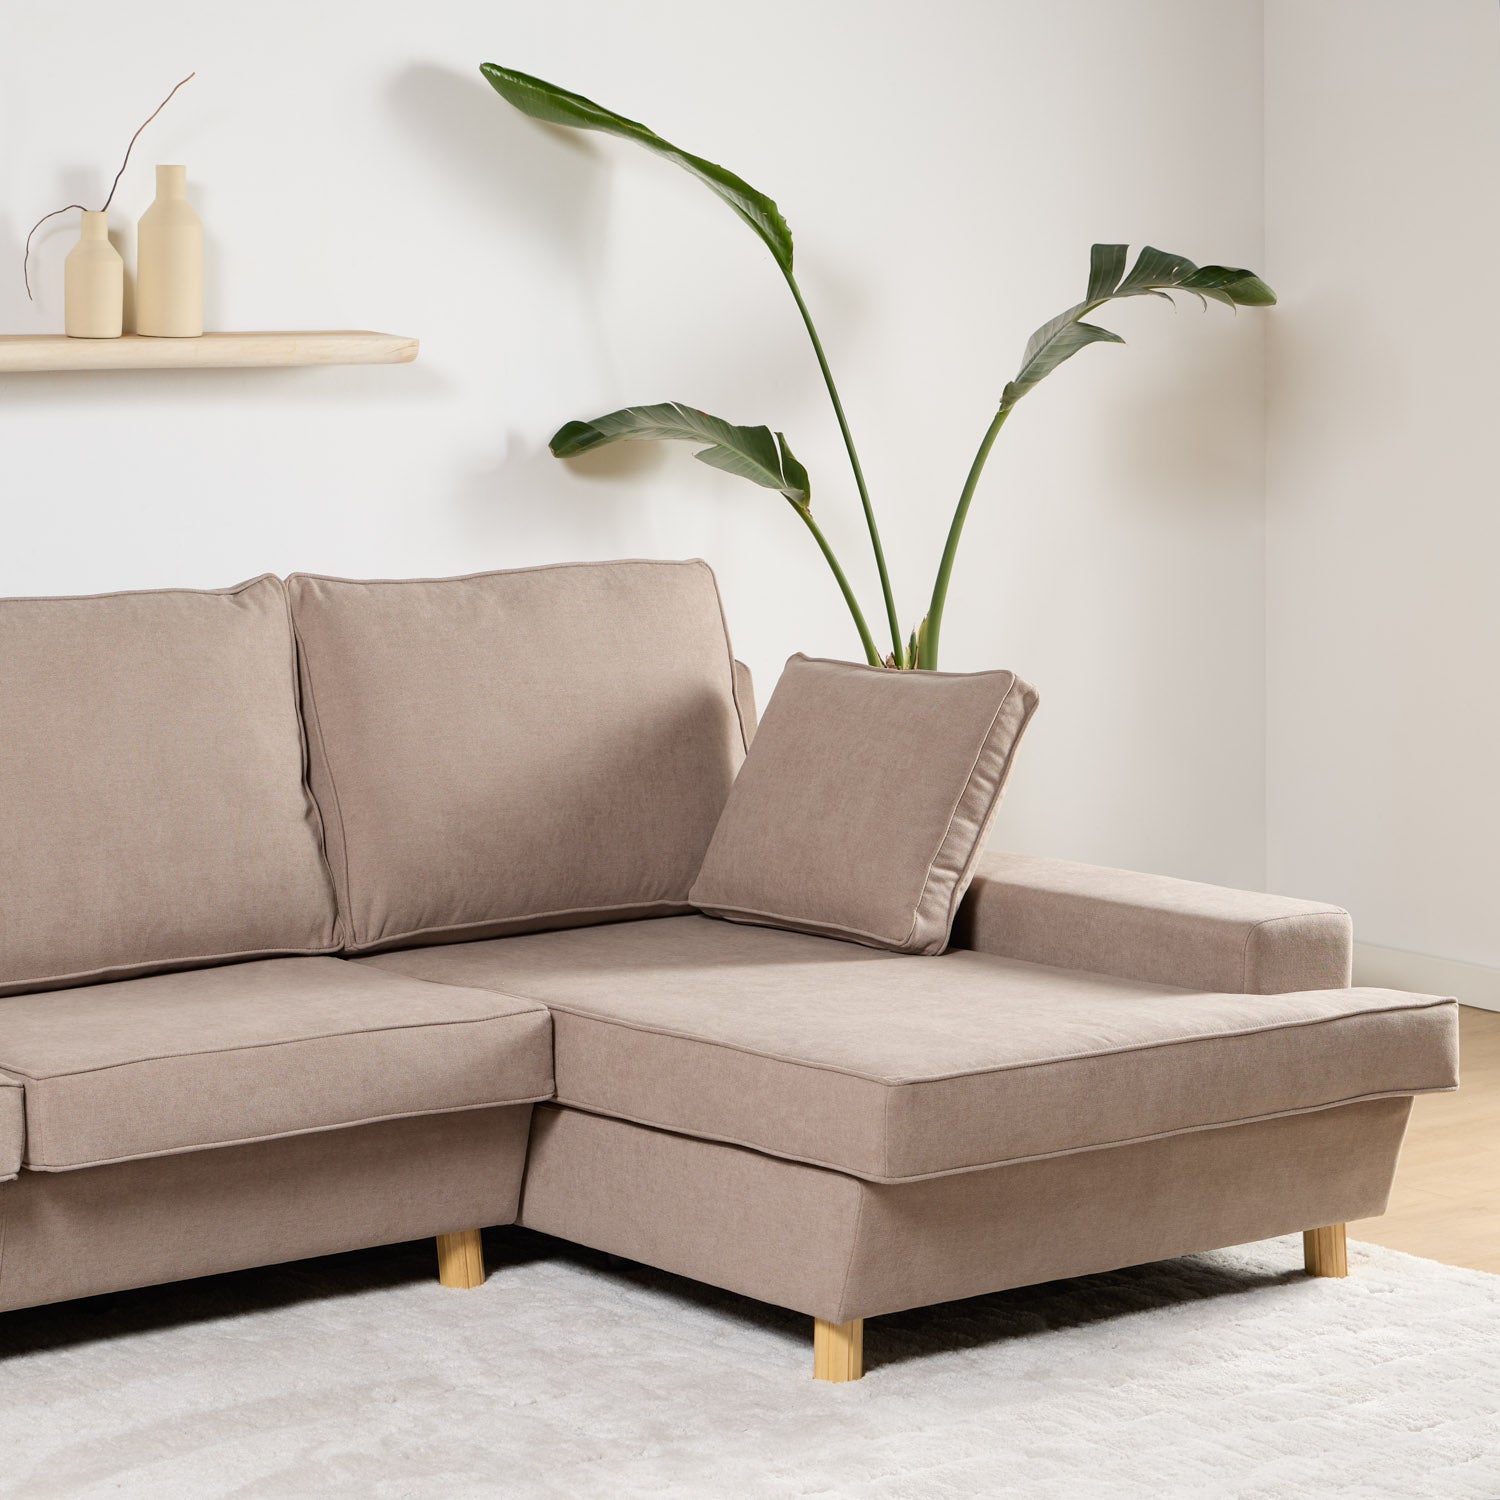 Sofa-Durian-Detalle-Chaise-Longue.jpg__PID:dc893bfe-26d2-46ba-9cfb-7a03120a5e34